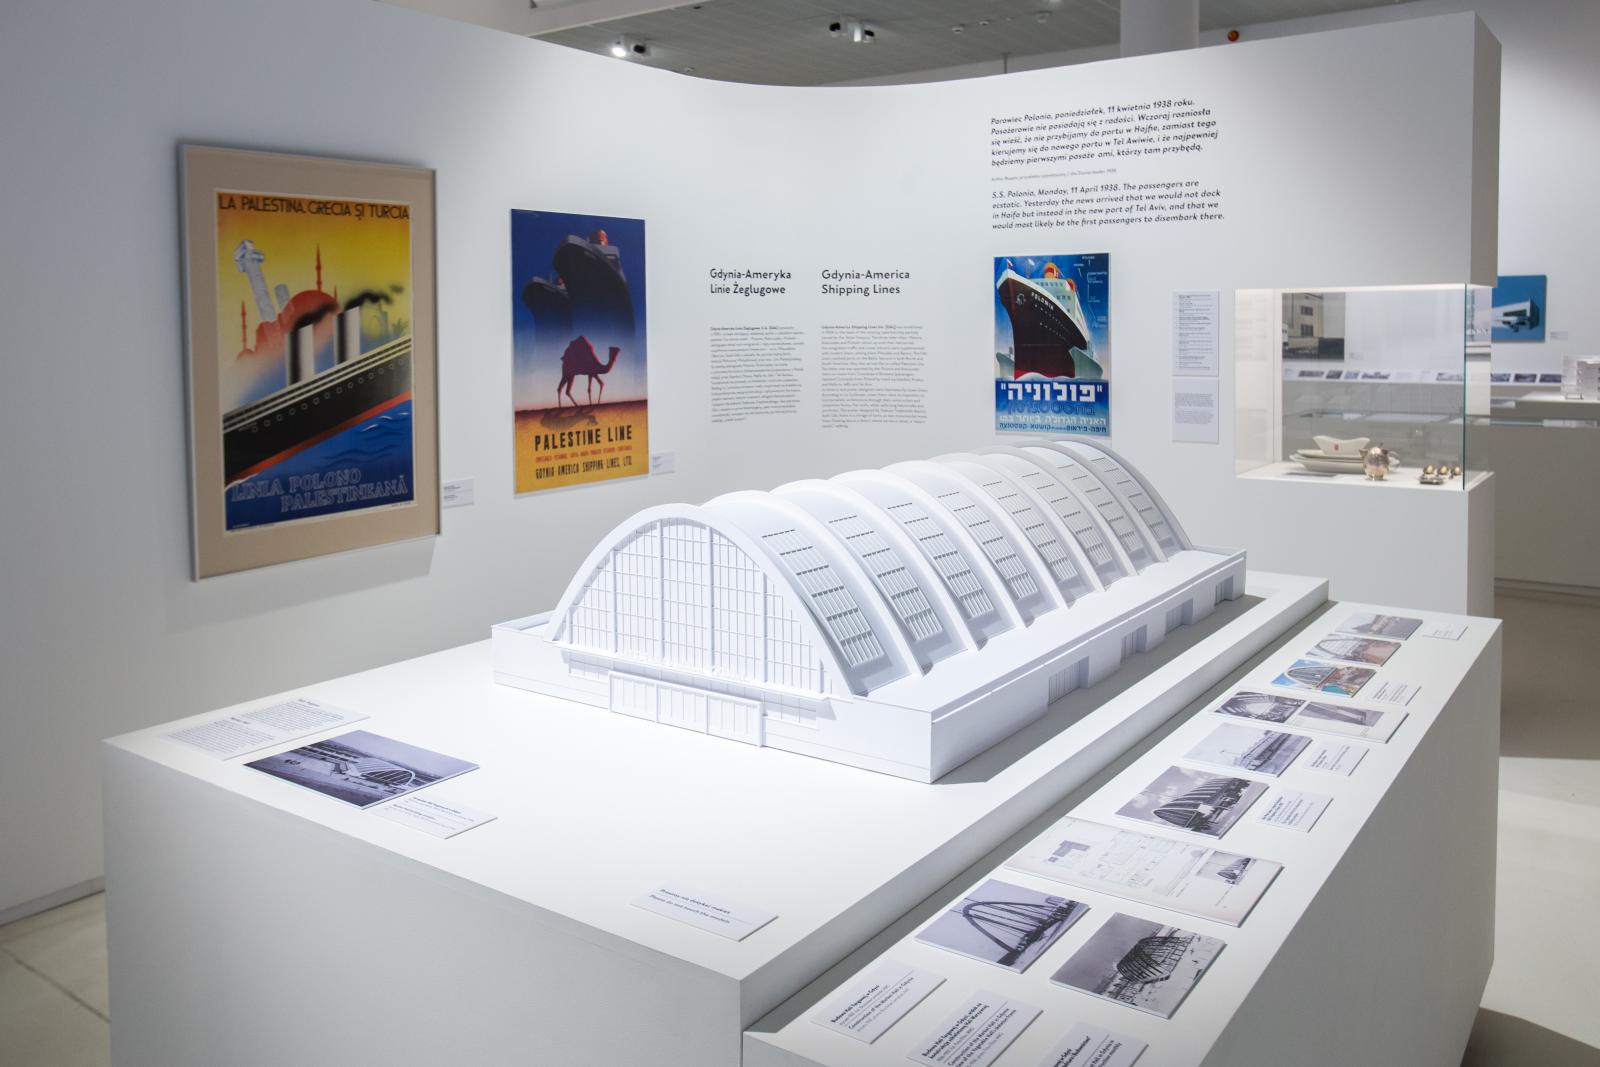 Wystawa czasowa "Gdynia - Tel Awiw" w Muzeum POLIN. Na zdjęciu biały model architektoniczny hali targowej w Gdyni, widać żebrowanie półokrągłych elementów konstrukcyjnych i inne składowe bryły. W tle, na białej ścianie obok, plakaty prezentowany na wystawie